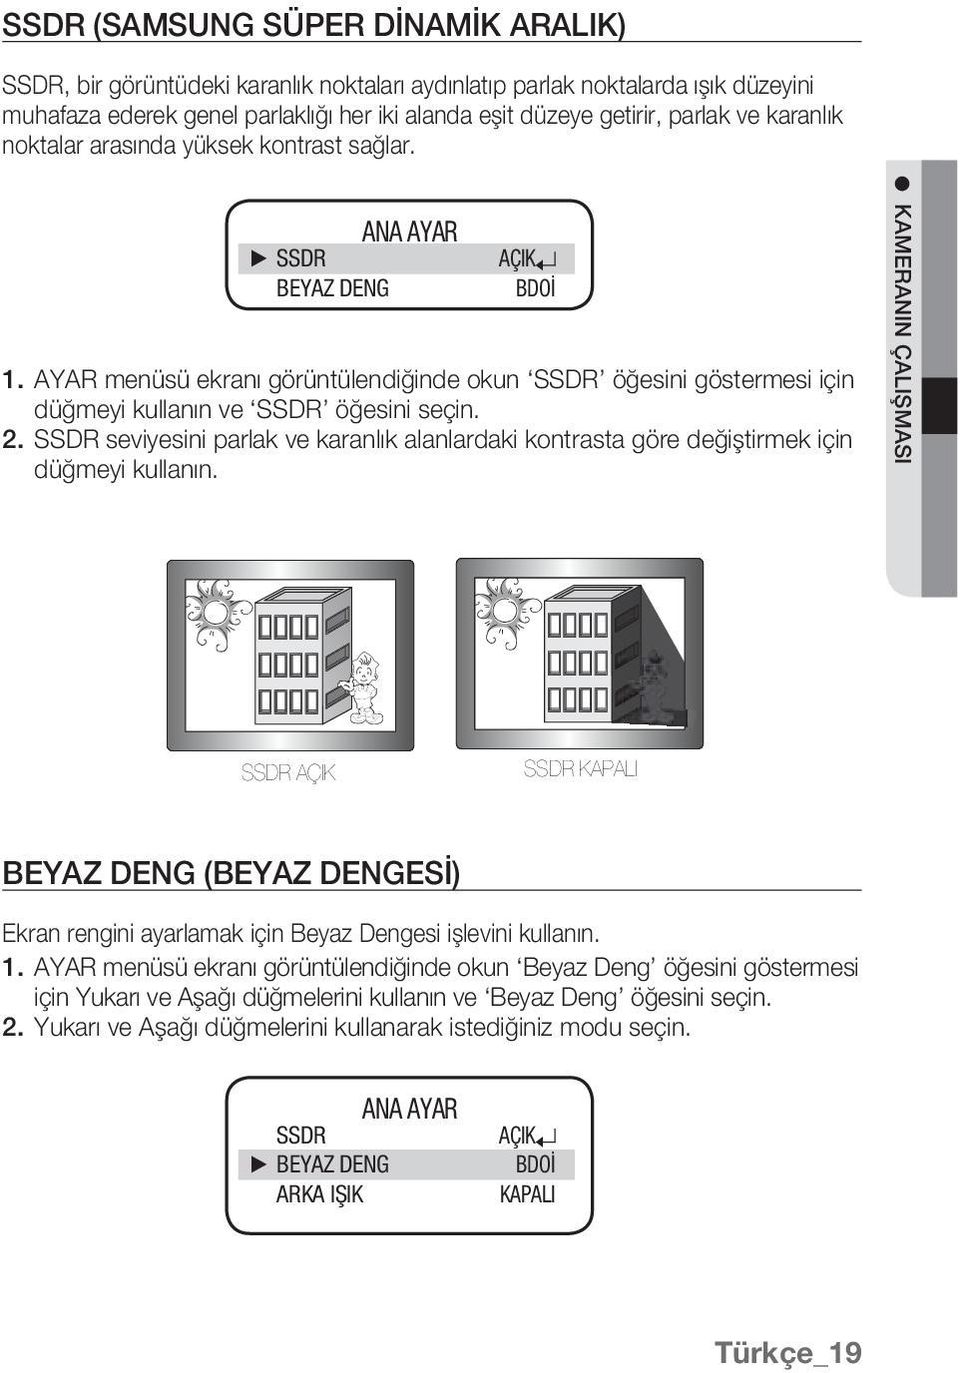 2. SSDR seviyesini parlak ve karanlık alanlardaki kontrasta göre değiştirmek için düğmeyi kullanın.